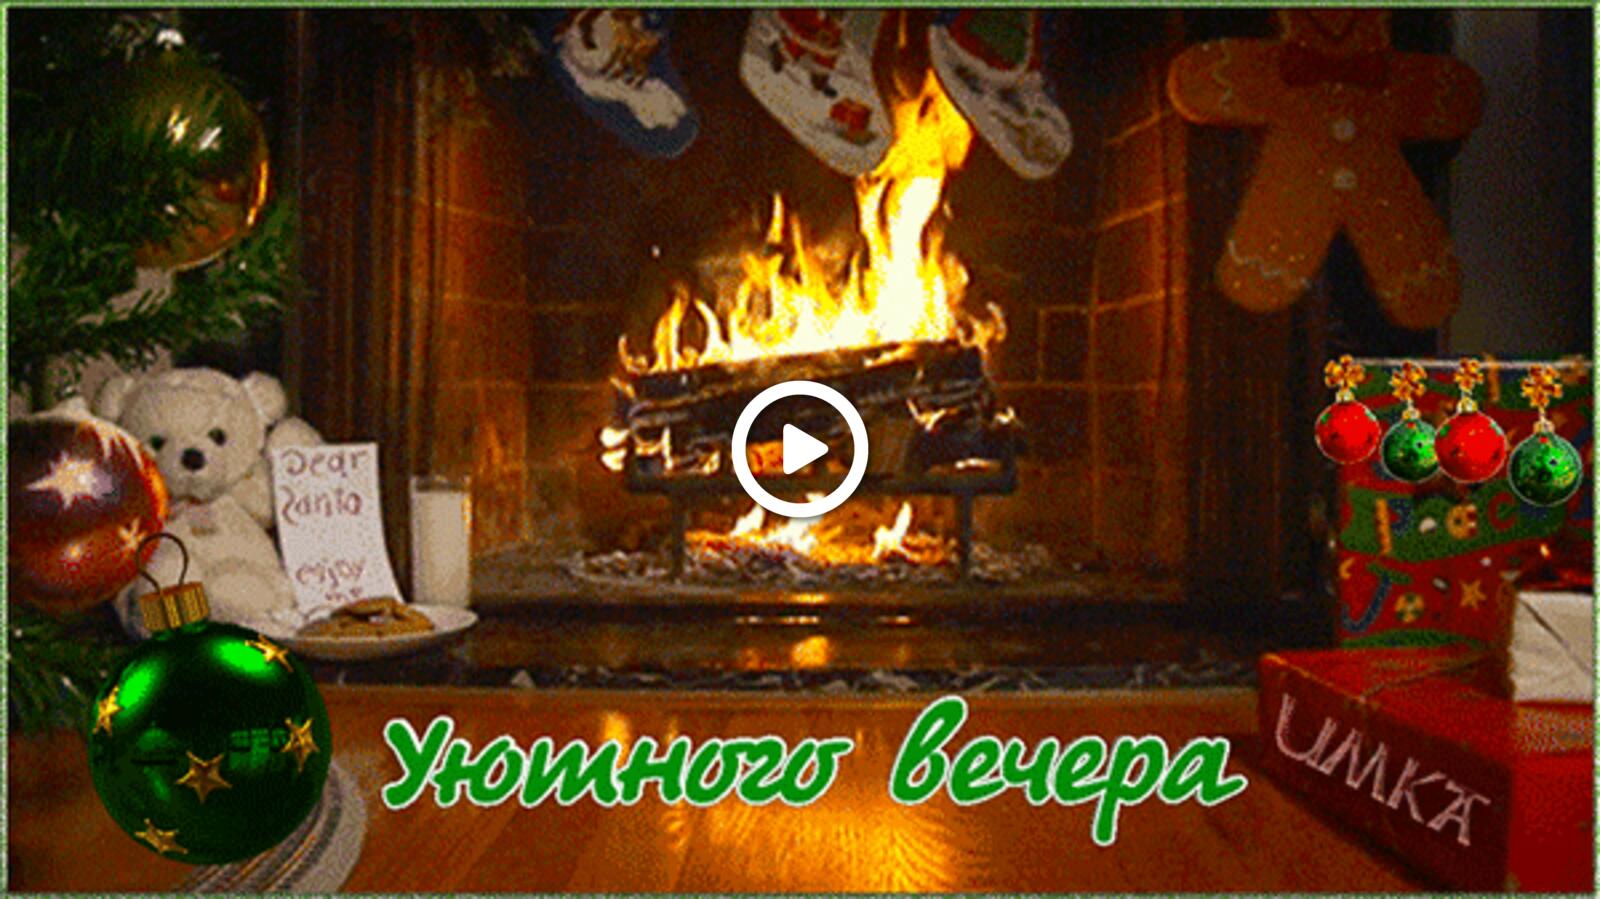 一张以晚上 壁炉 圣诞树为主题的明信片